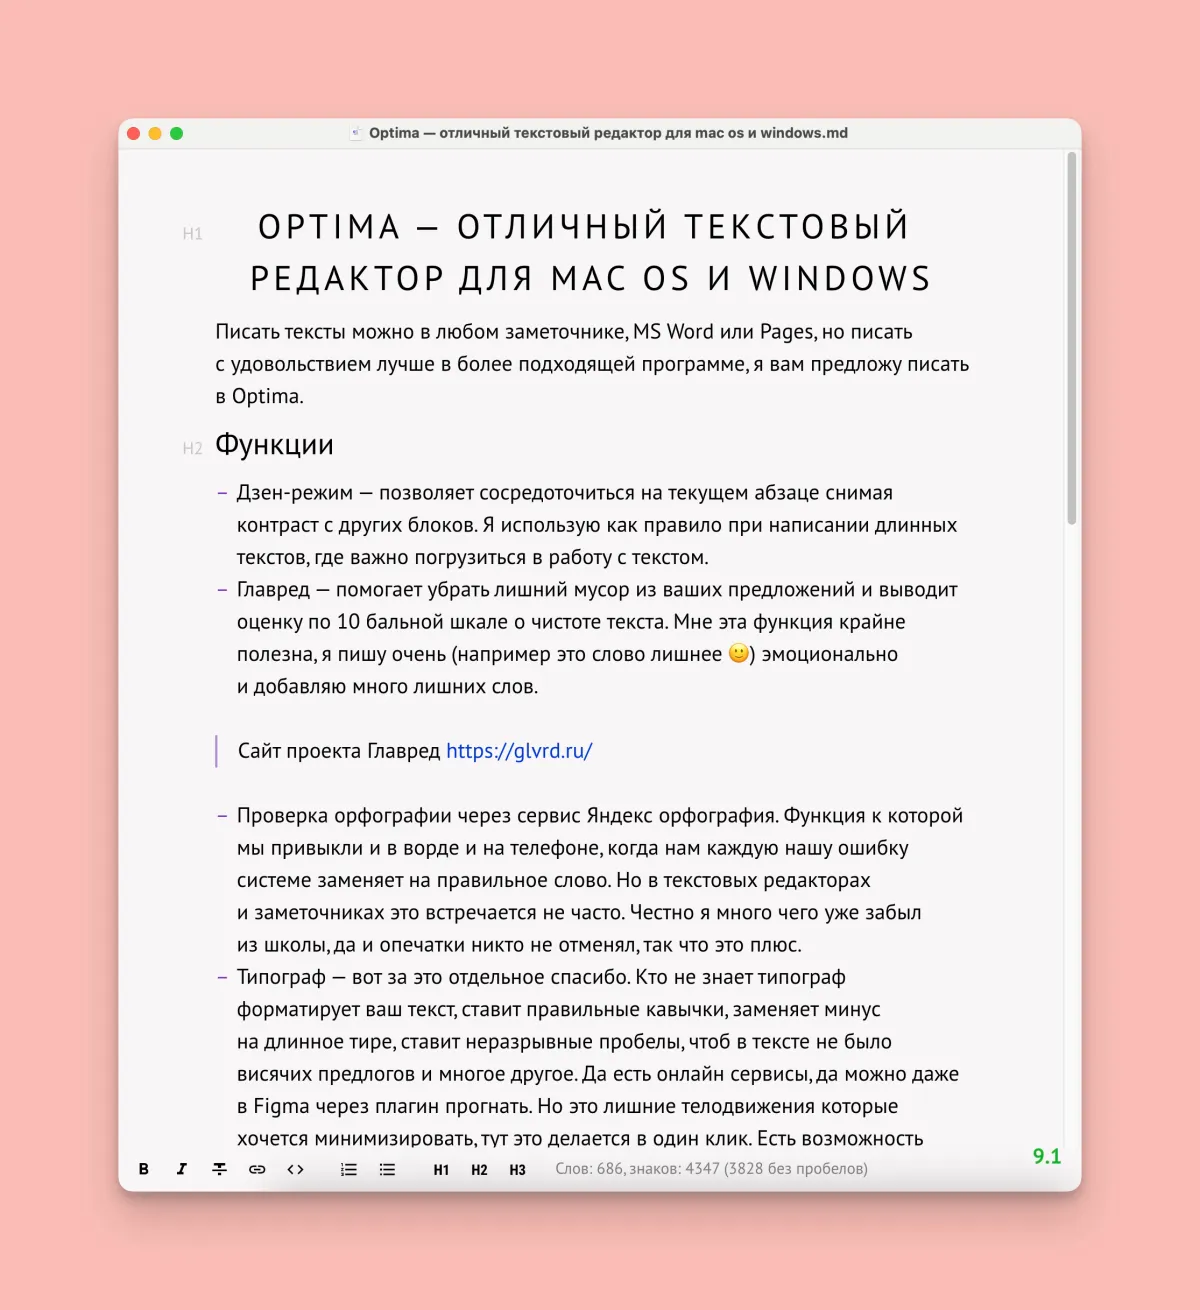 Optima — отличный текстовый редактор для mac os и windows